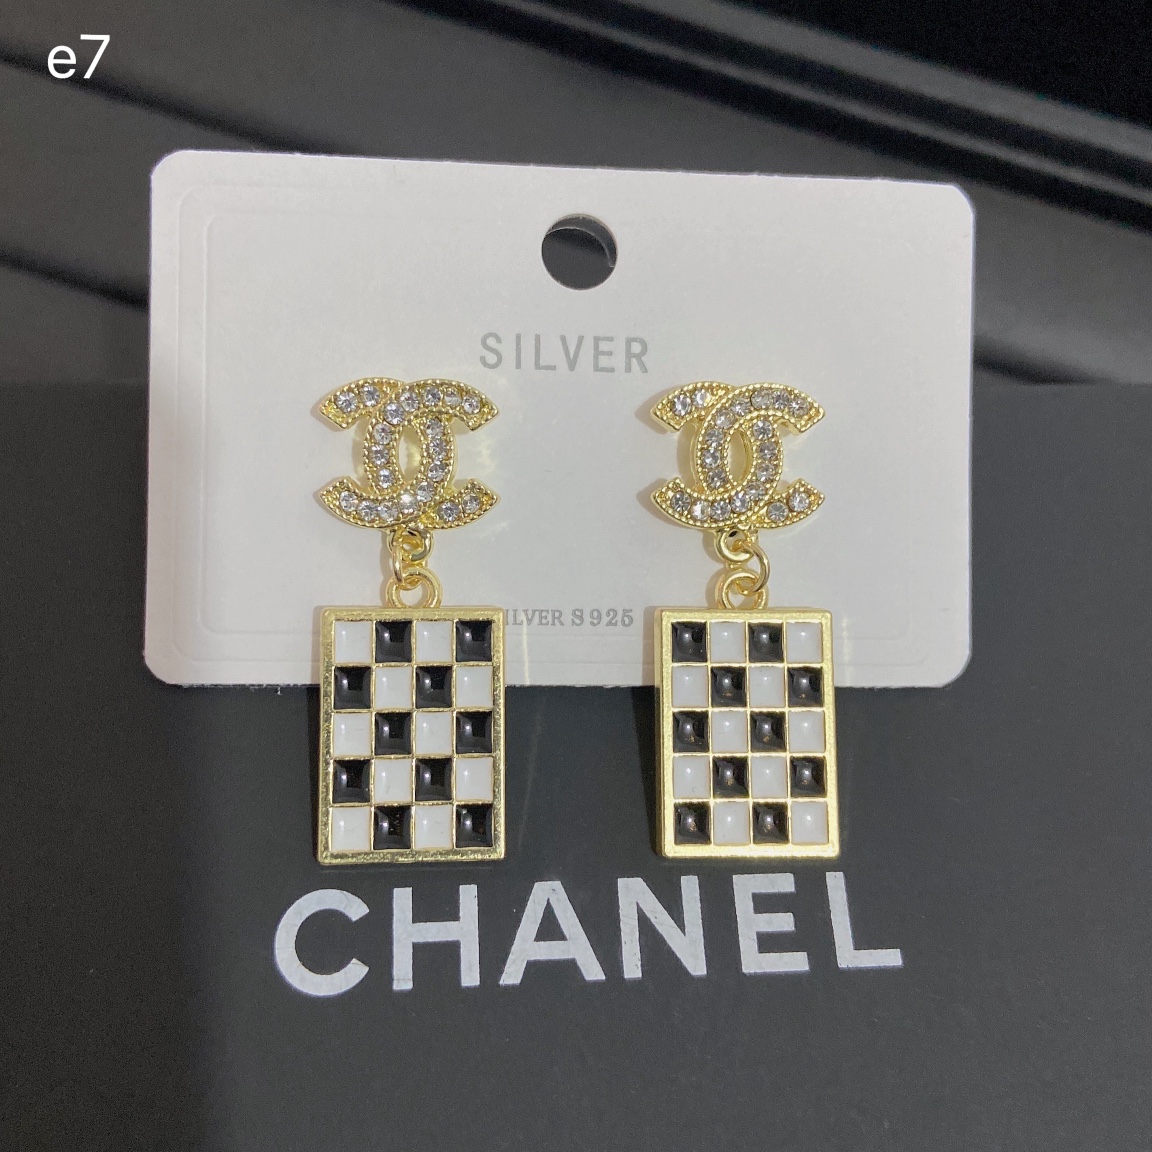 Chanel earring 107552